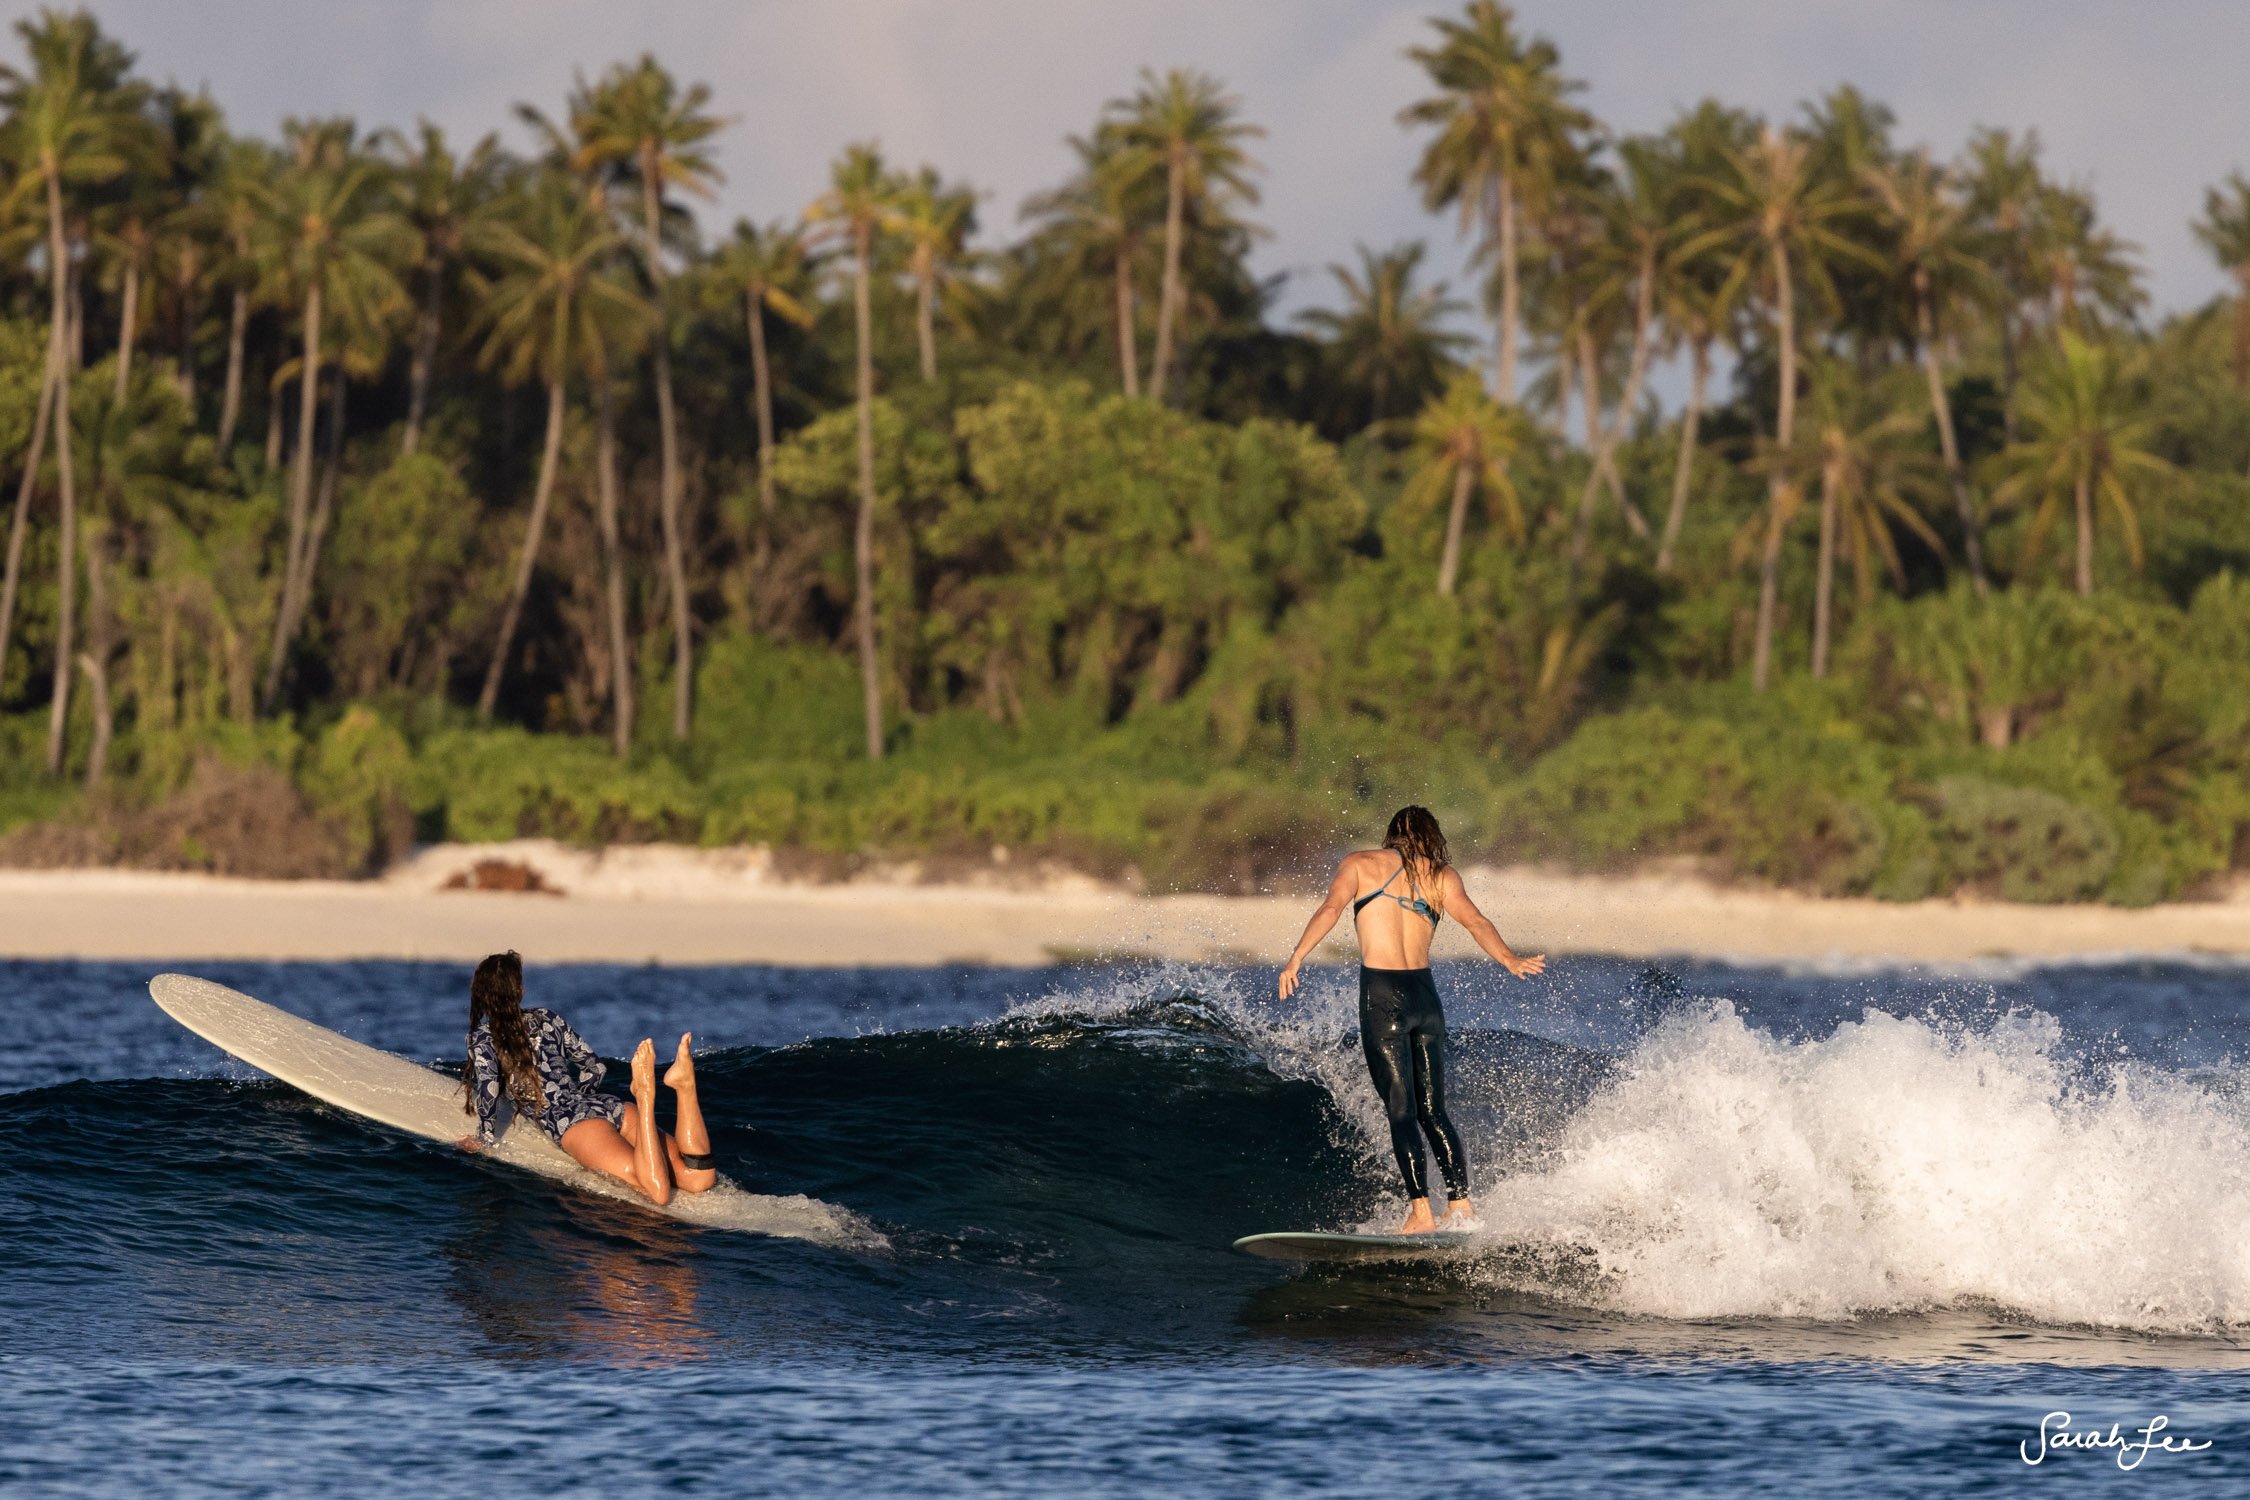 Girls longboarding trip in the Maldives. Leah Dawson wearing SEEA c-skin surf suit.